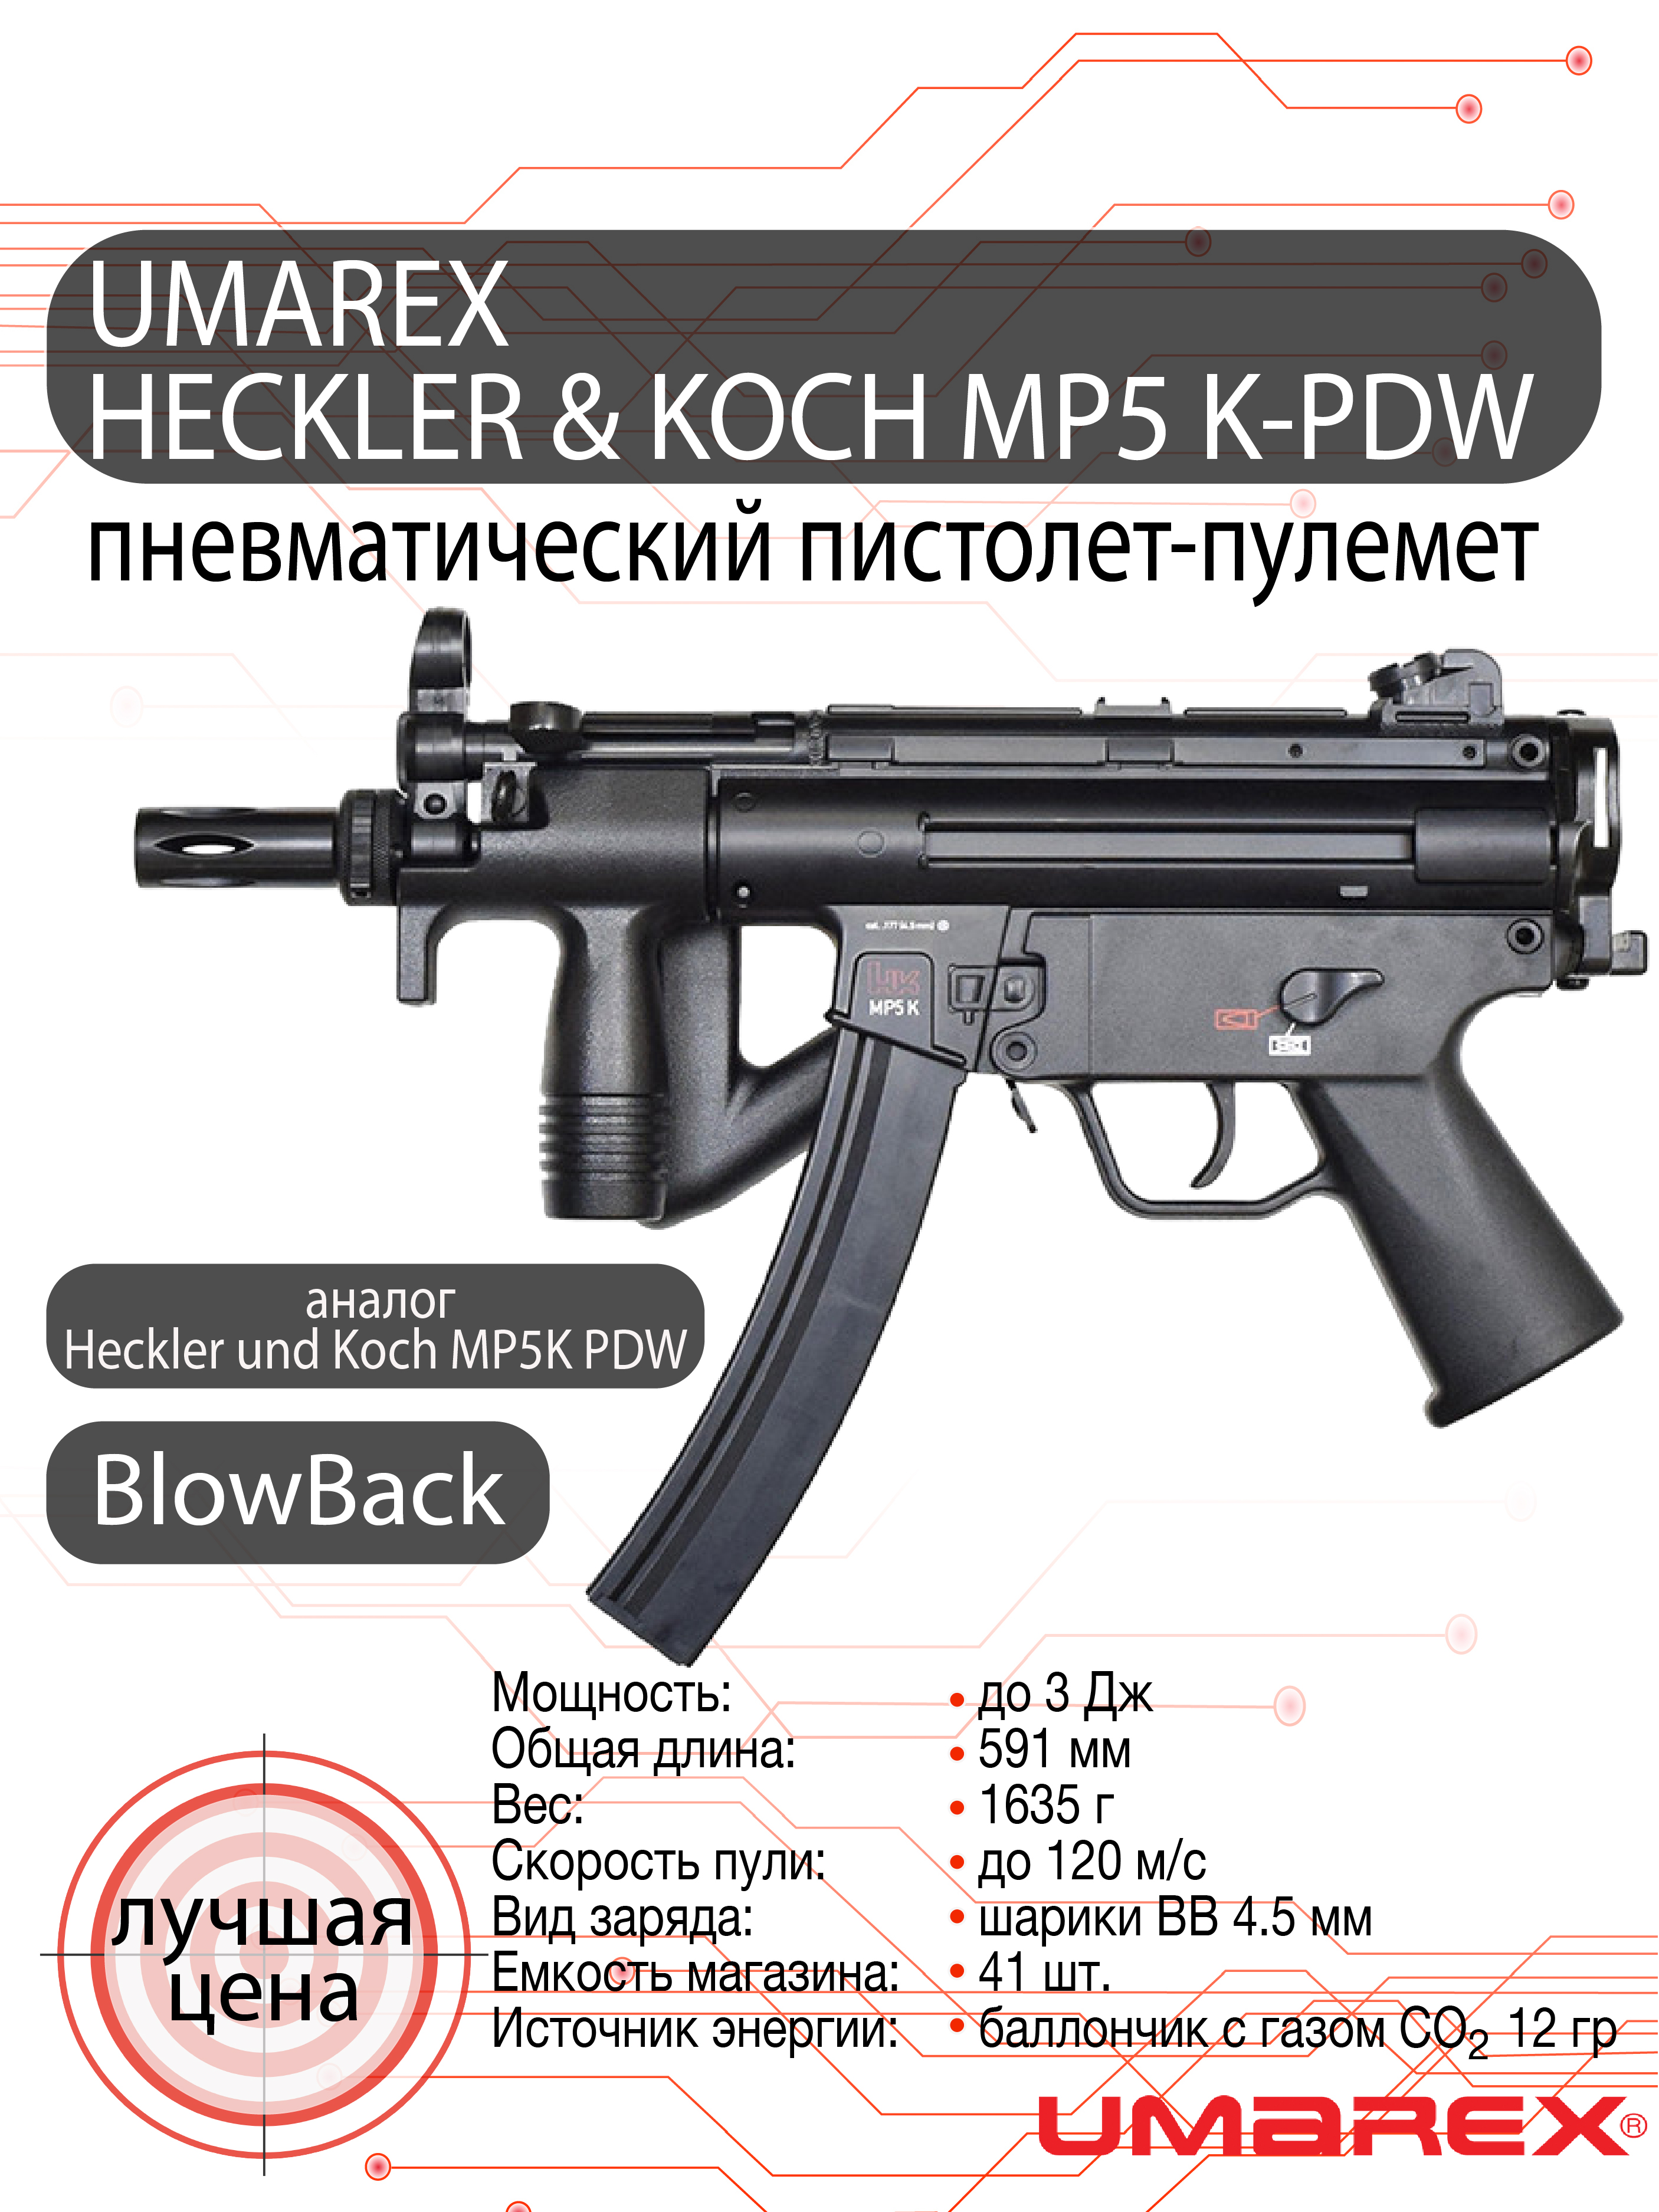 Пневматический пистолет-пулемет UMAREX Heckler & Koch MP5 K-PDW 4,5мм 3J